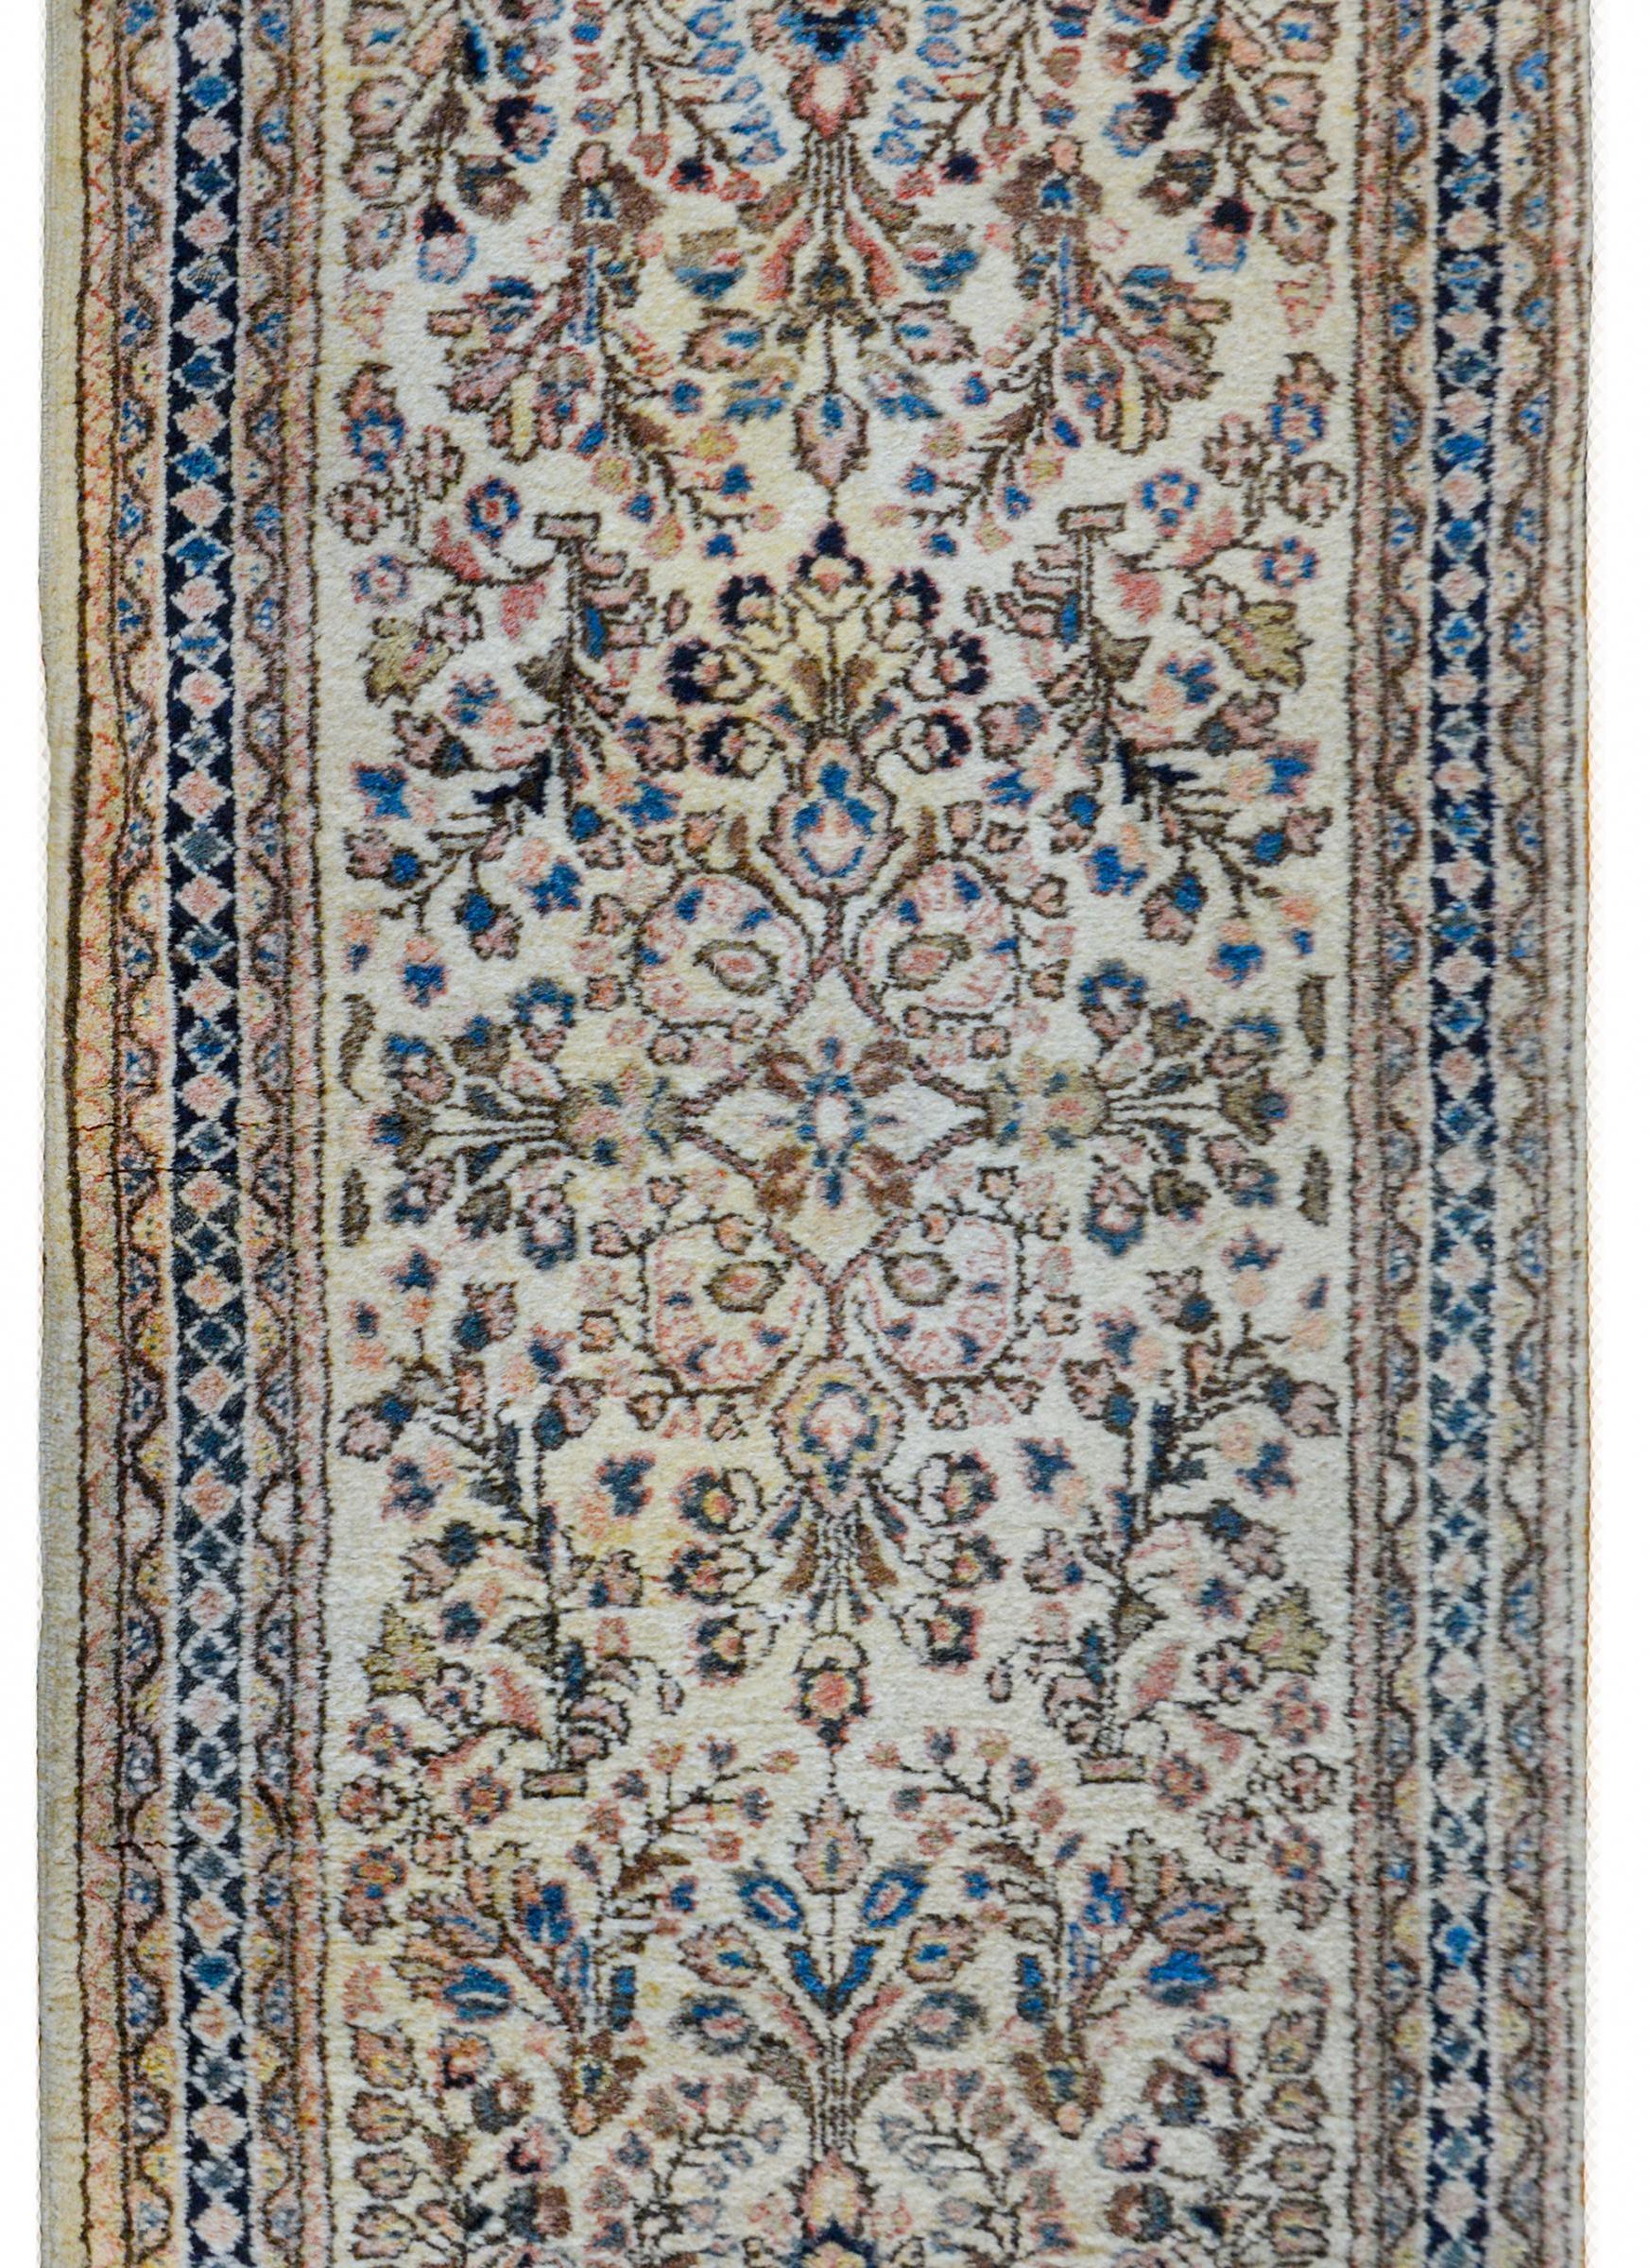 Ein wunderschöner persischer Sarouk-Teppich aus dem frühen 20. Jahrhundert mit einem wunderbaren, gespiegelten Blumen- und Rankenmuster aus hell- und dunkelindigoblauer, cremefarbener, goldener, brauner und rosafarbener, pflanzengefärbter Wolle auf